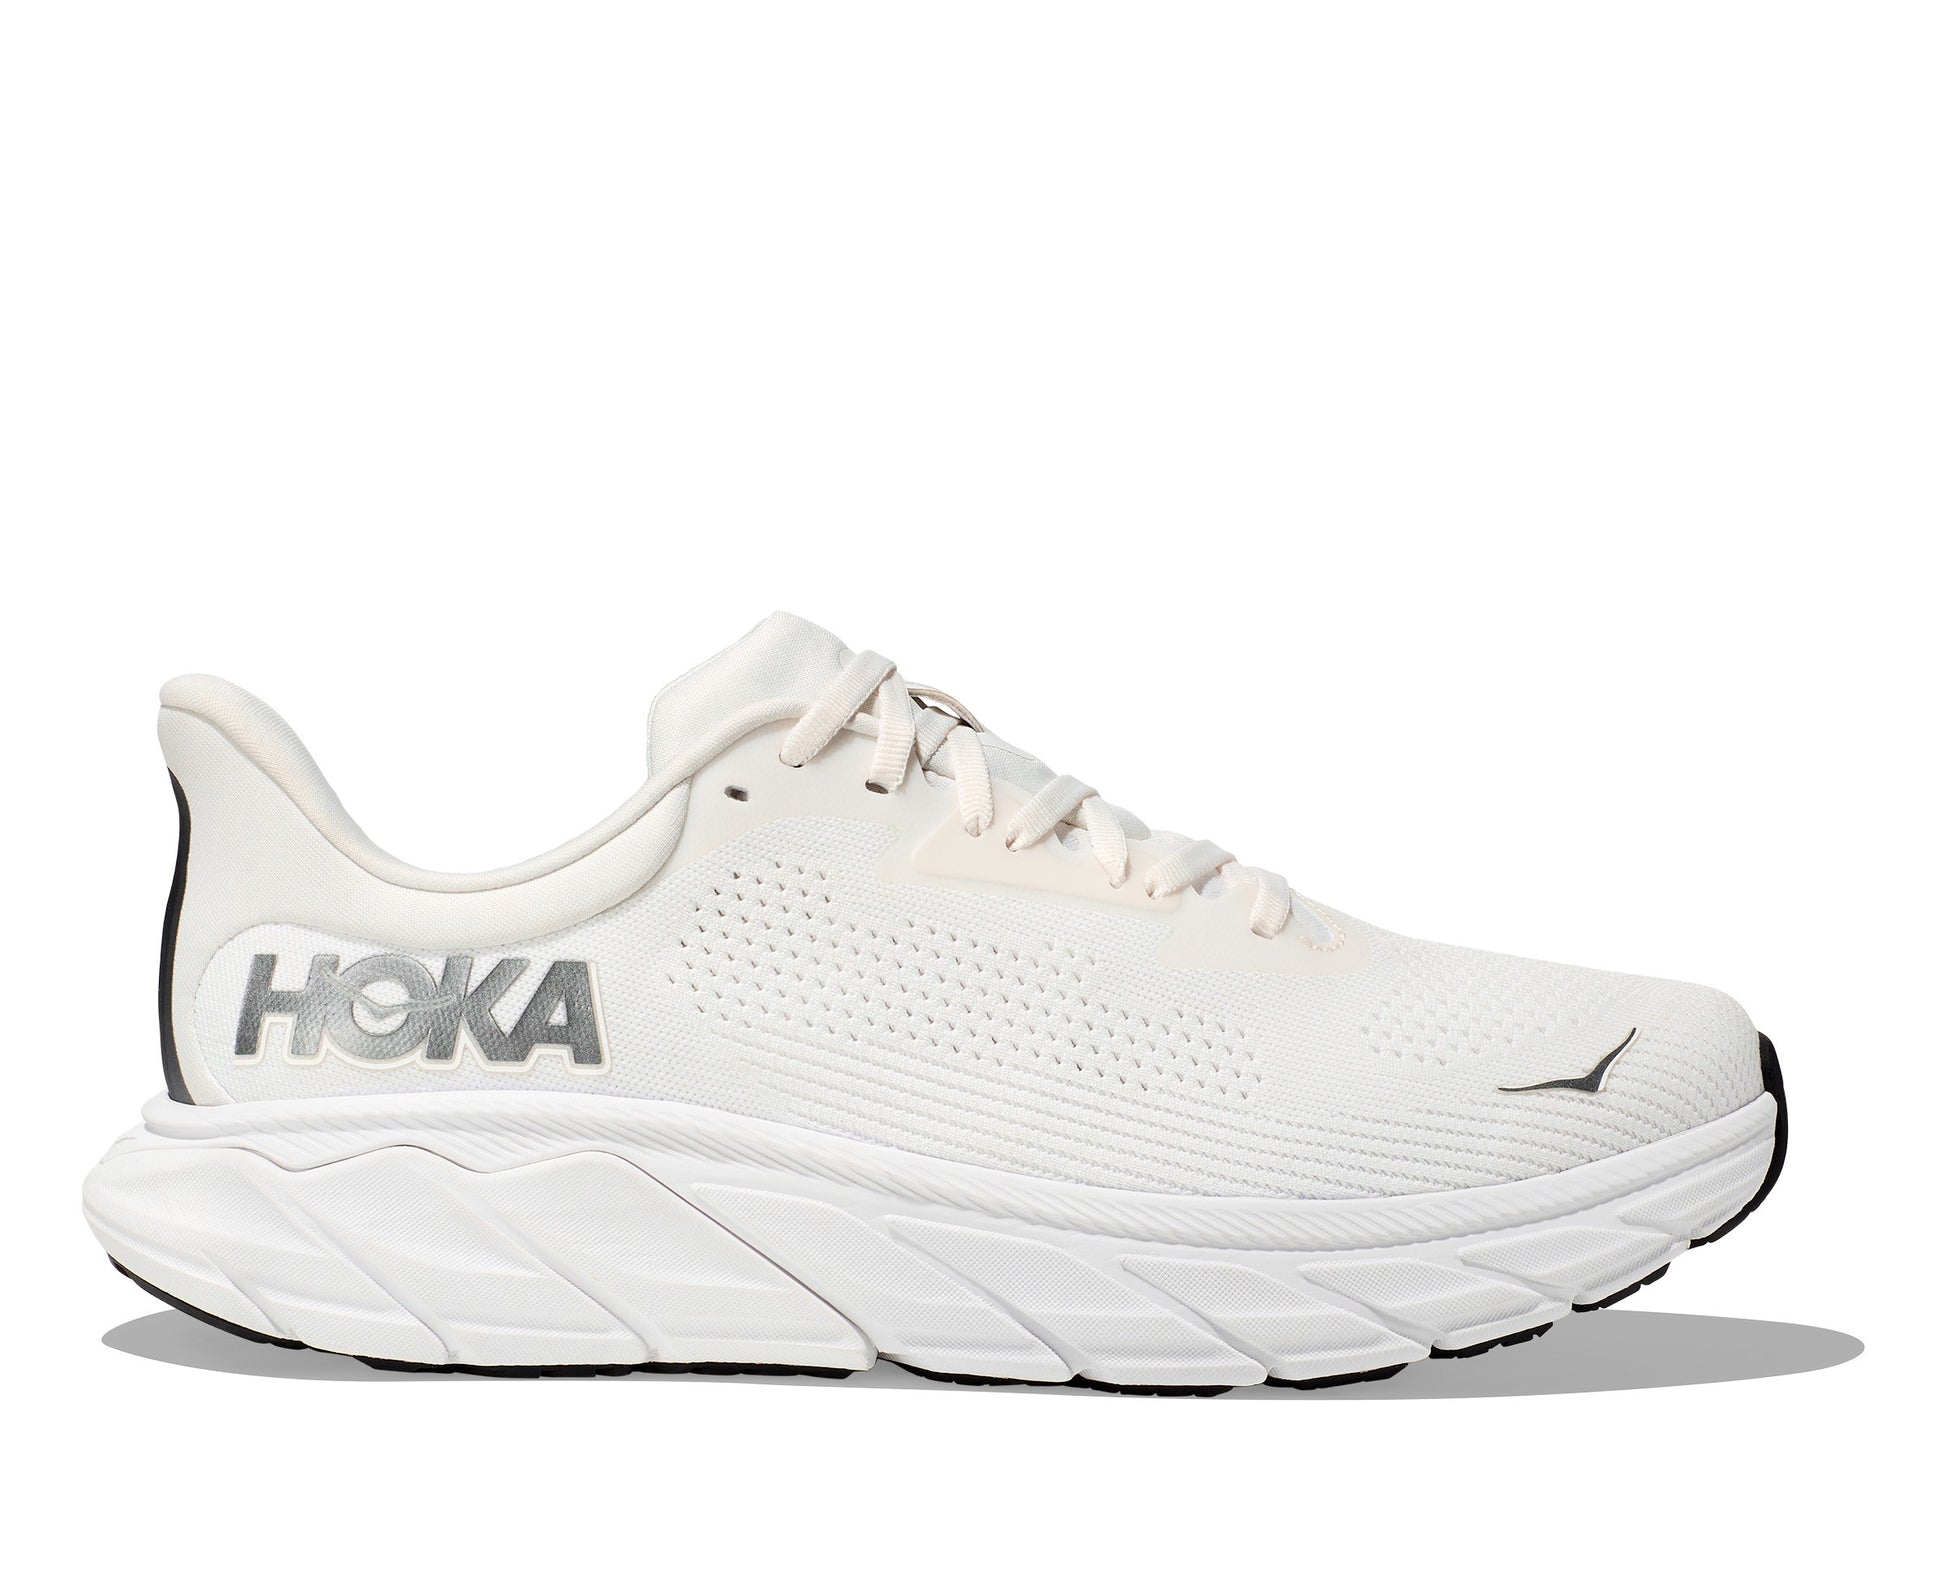 HOKA Arahi 7 - נעלי ספורט גברים הוקה ארהי 7